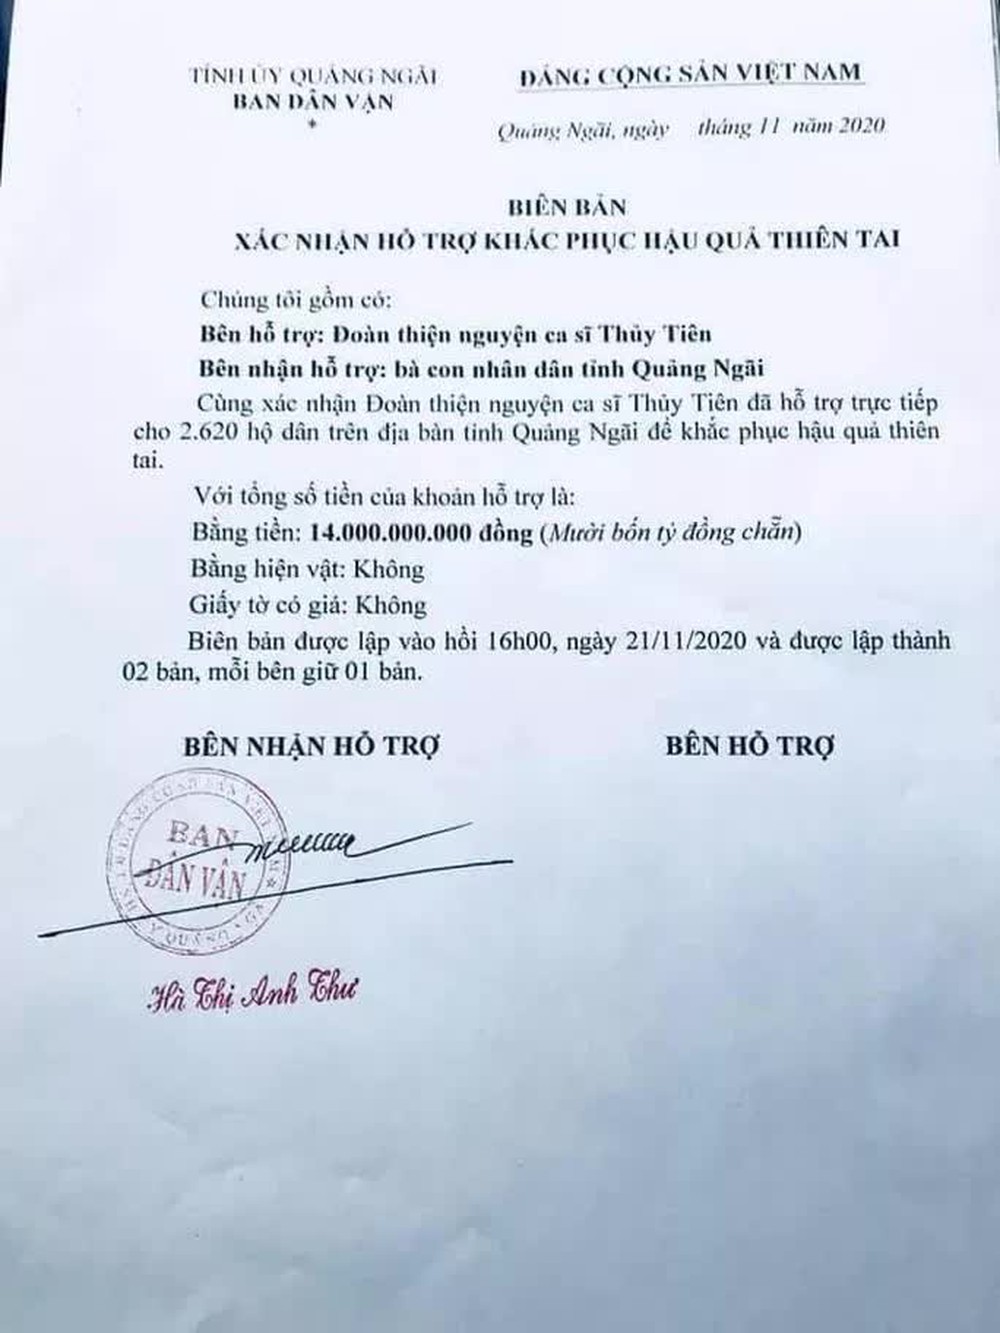 Đại diện tỉnh Quảng Ngãi nói cụ thể về số tiền 14 tỉ đoàn ca sĩ Thủy Tiên ủng hộ người dân vùng lũ - Ảnh 2.